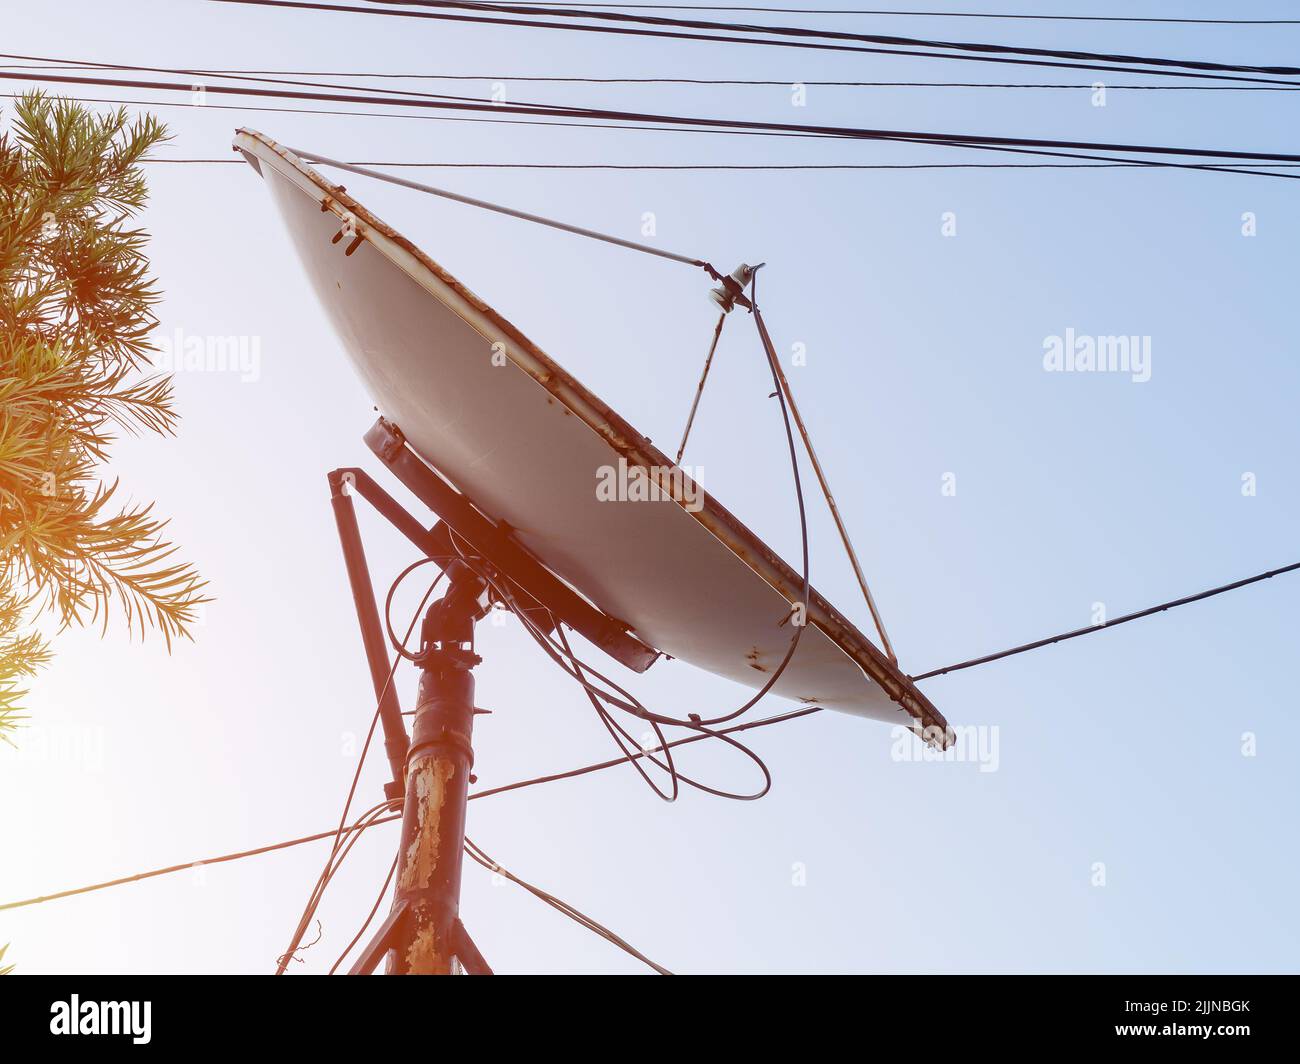 Antena de televisión doméstica redonda contra el cielo Fotografía de stock  - Alamy